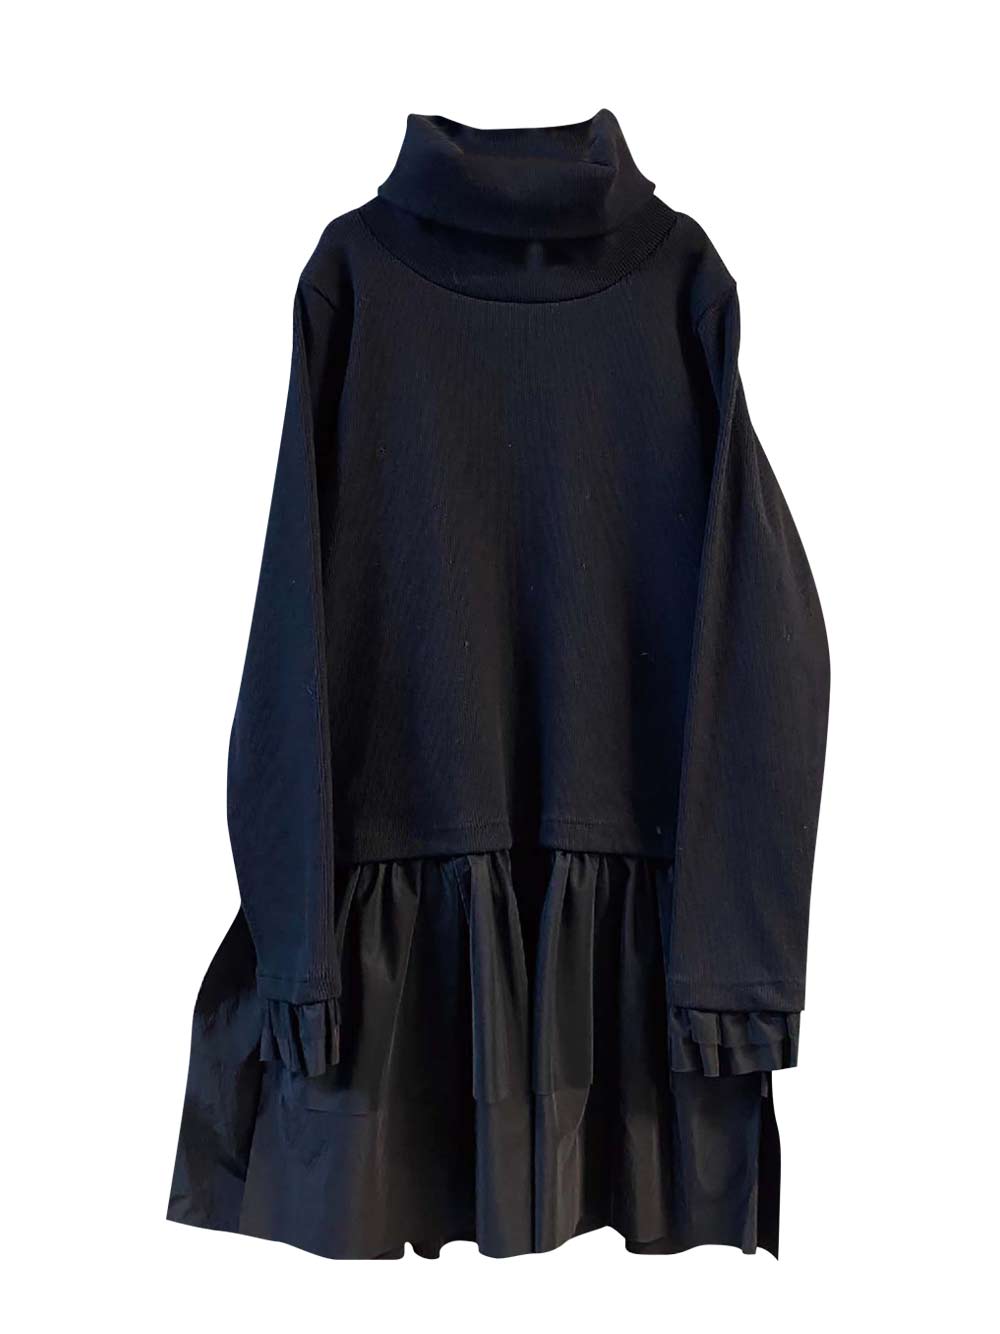 PREORDER: Black Turtleneck Dress